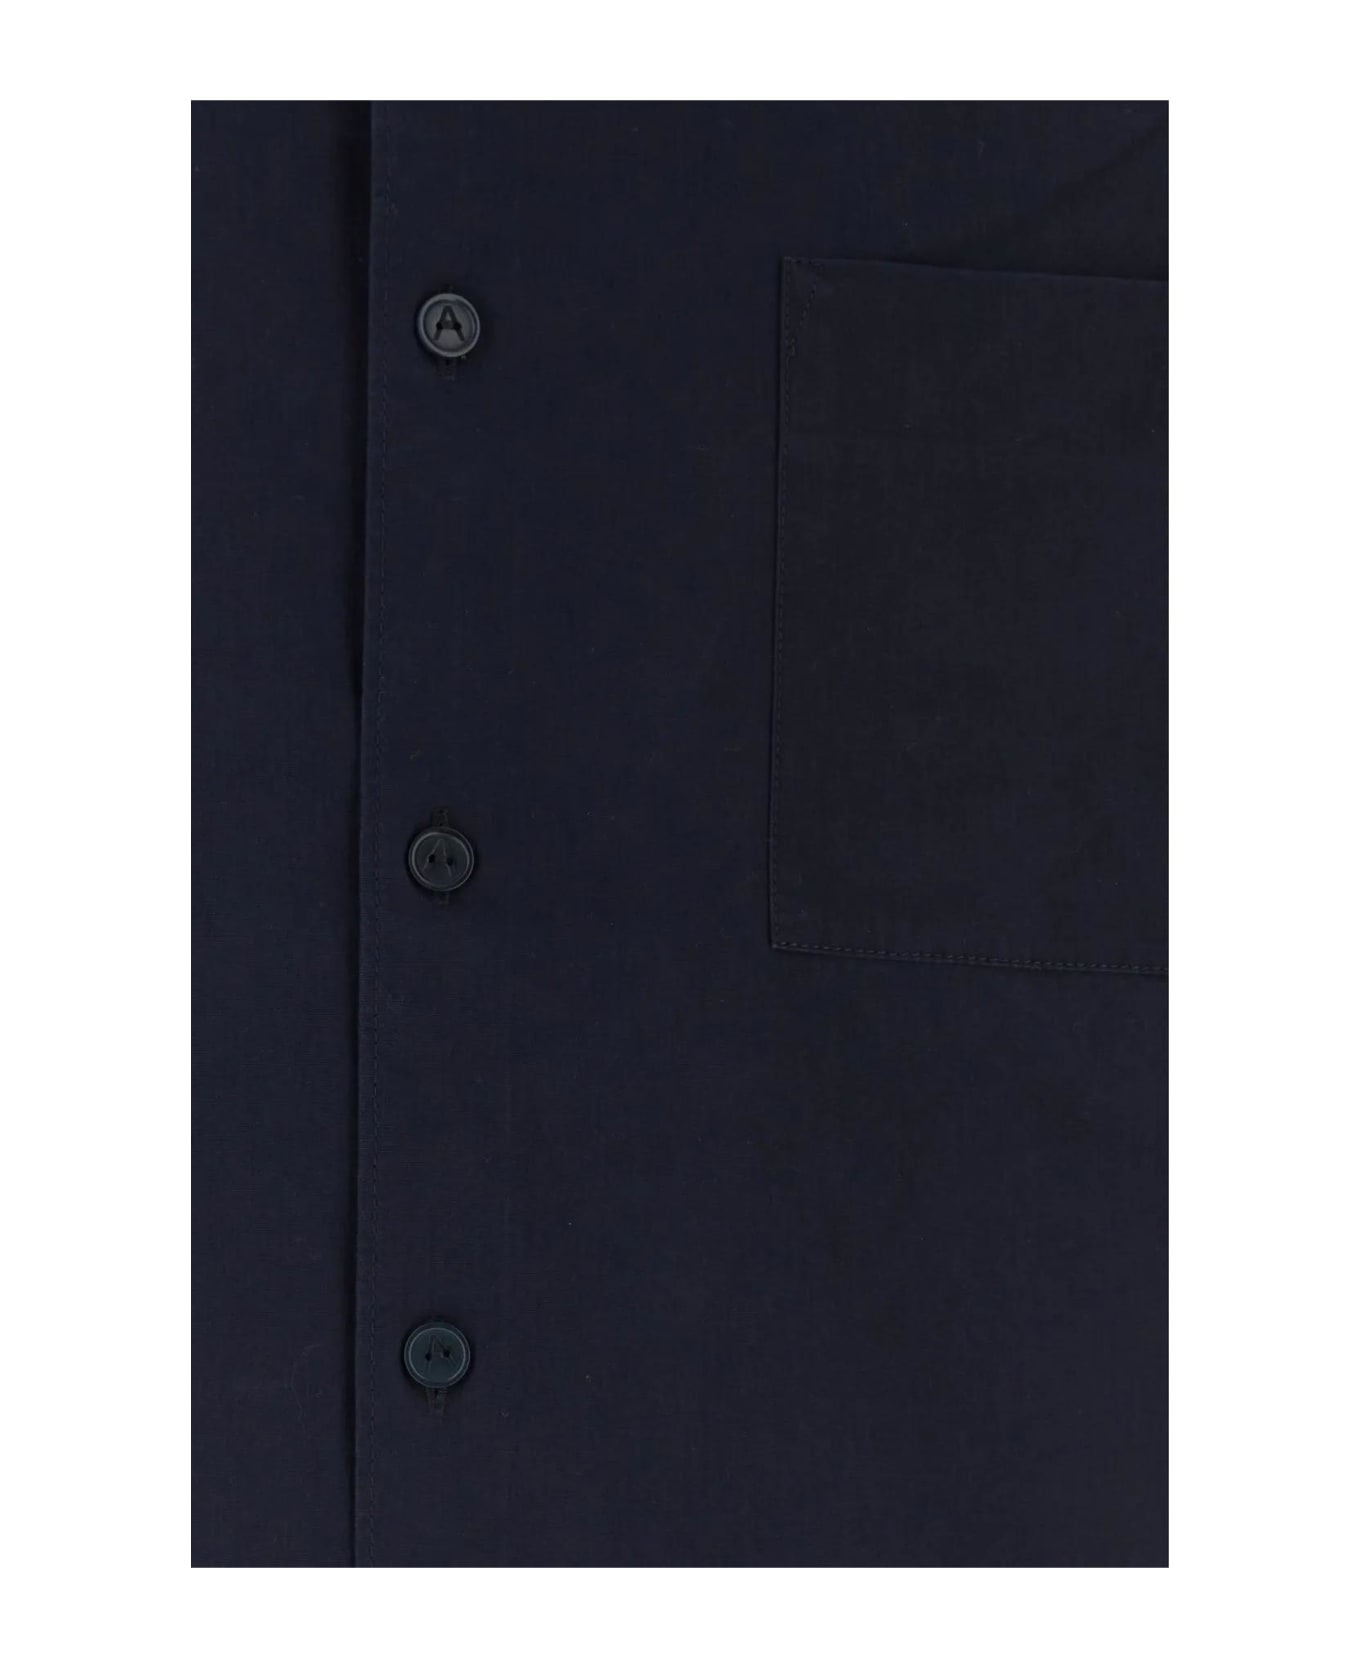 A.P.C. Dark Blue Poplin Ross Shirt - Iak Dark Navy シャツ